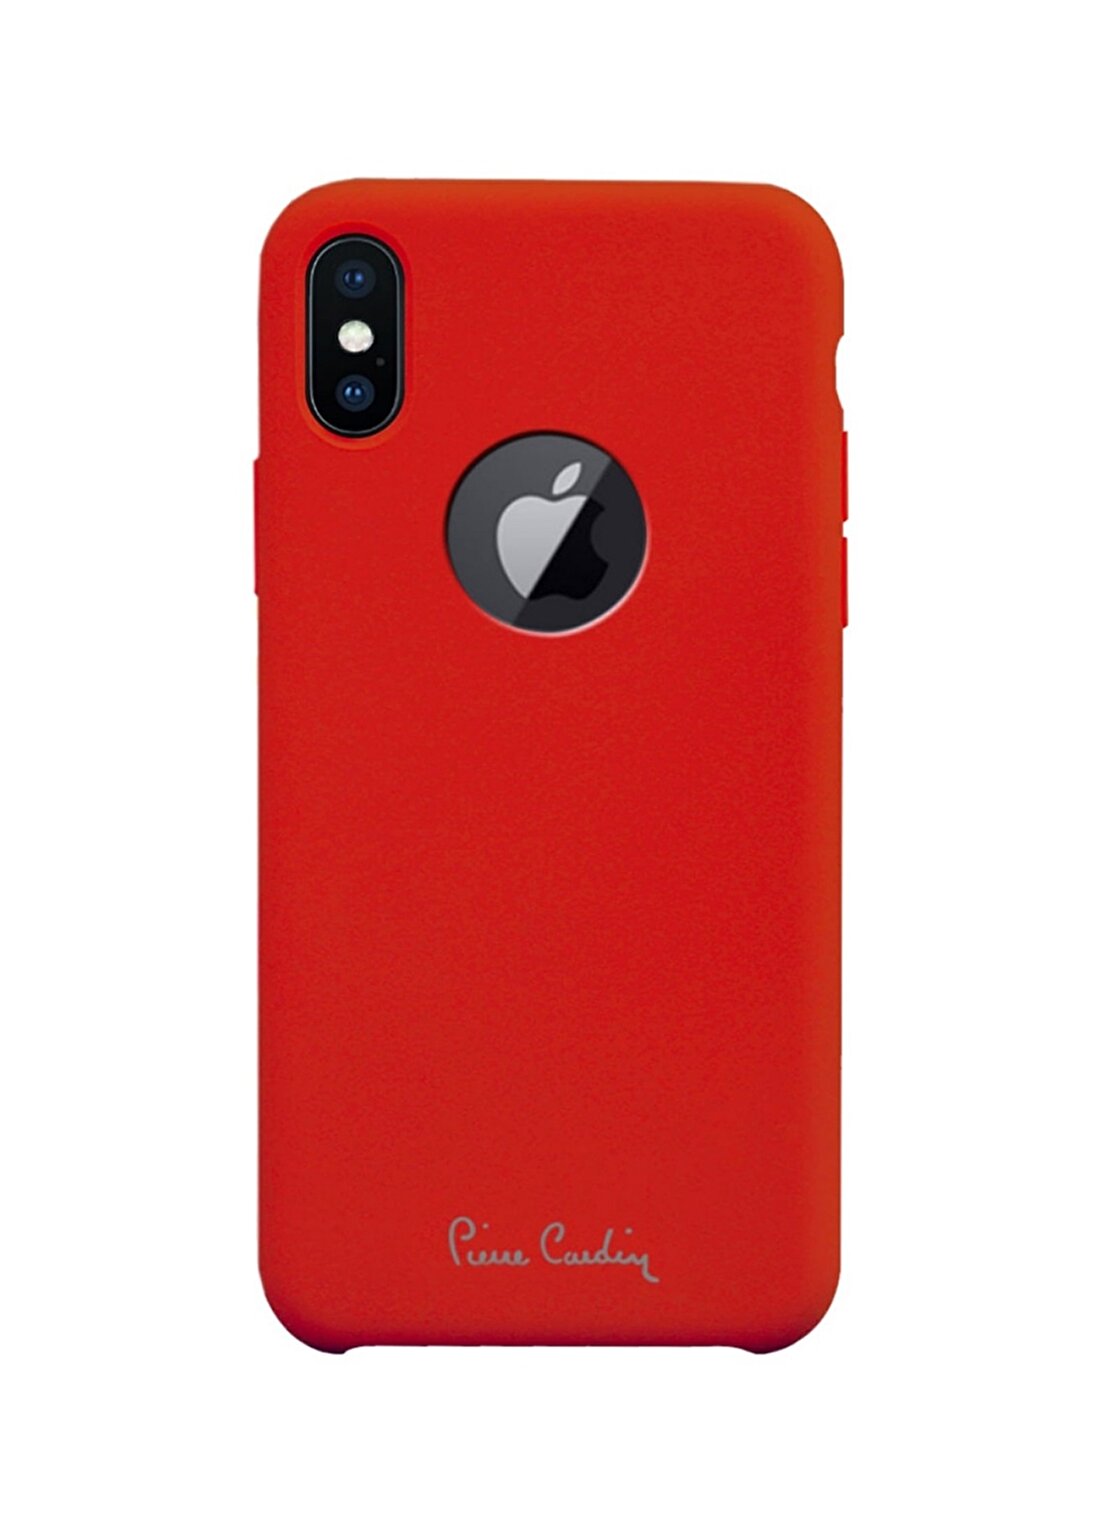 Pierre Cardin PCR-S26 Iphone X - XS (5.8) Kırmızı Silikon Koruma Telefon Aksesuarı